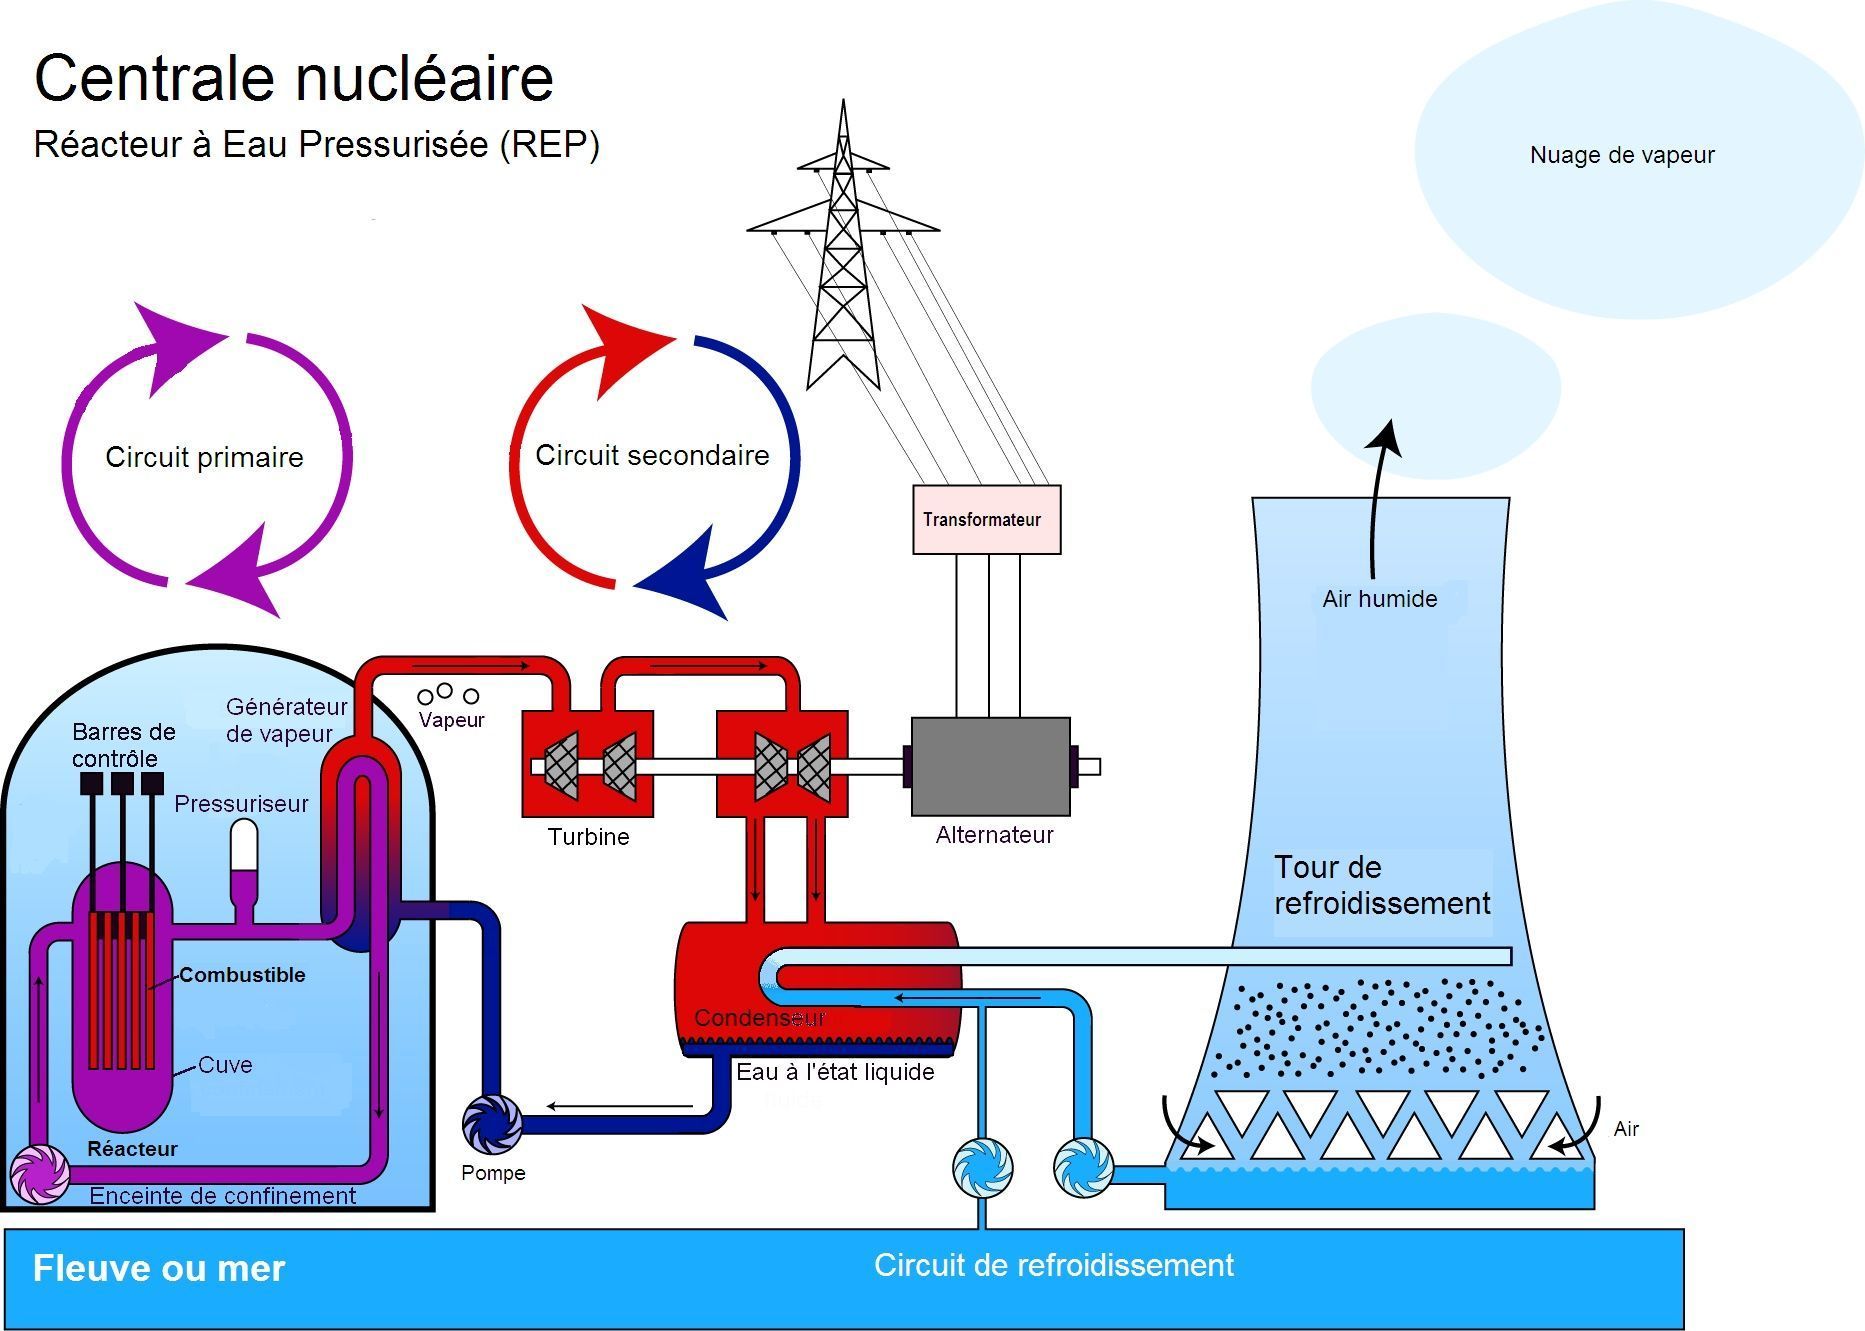 De l'importance des pompes dans les centrales nucléaires